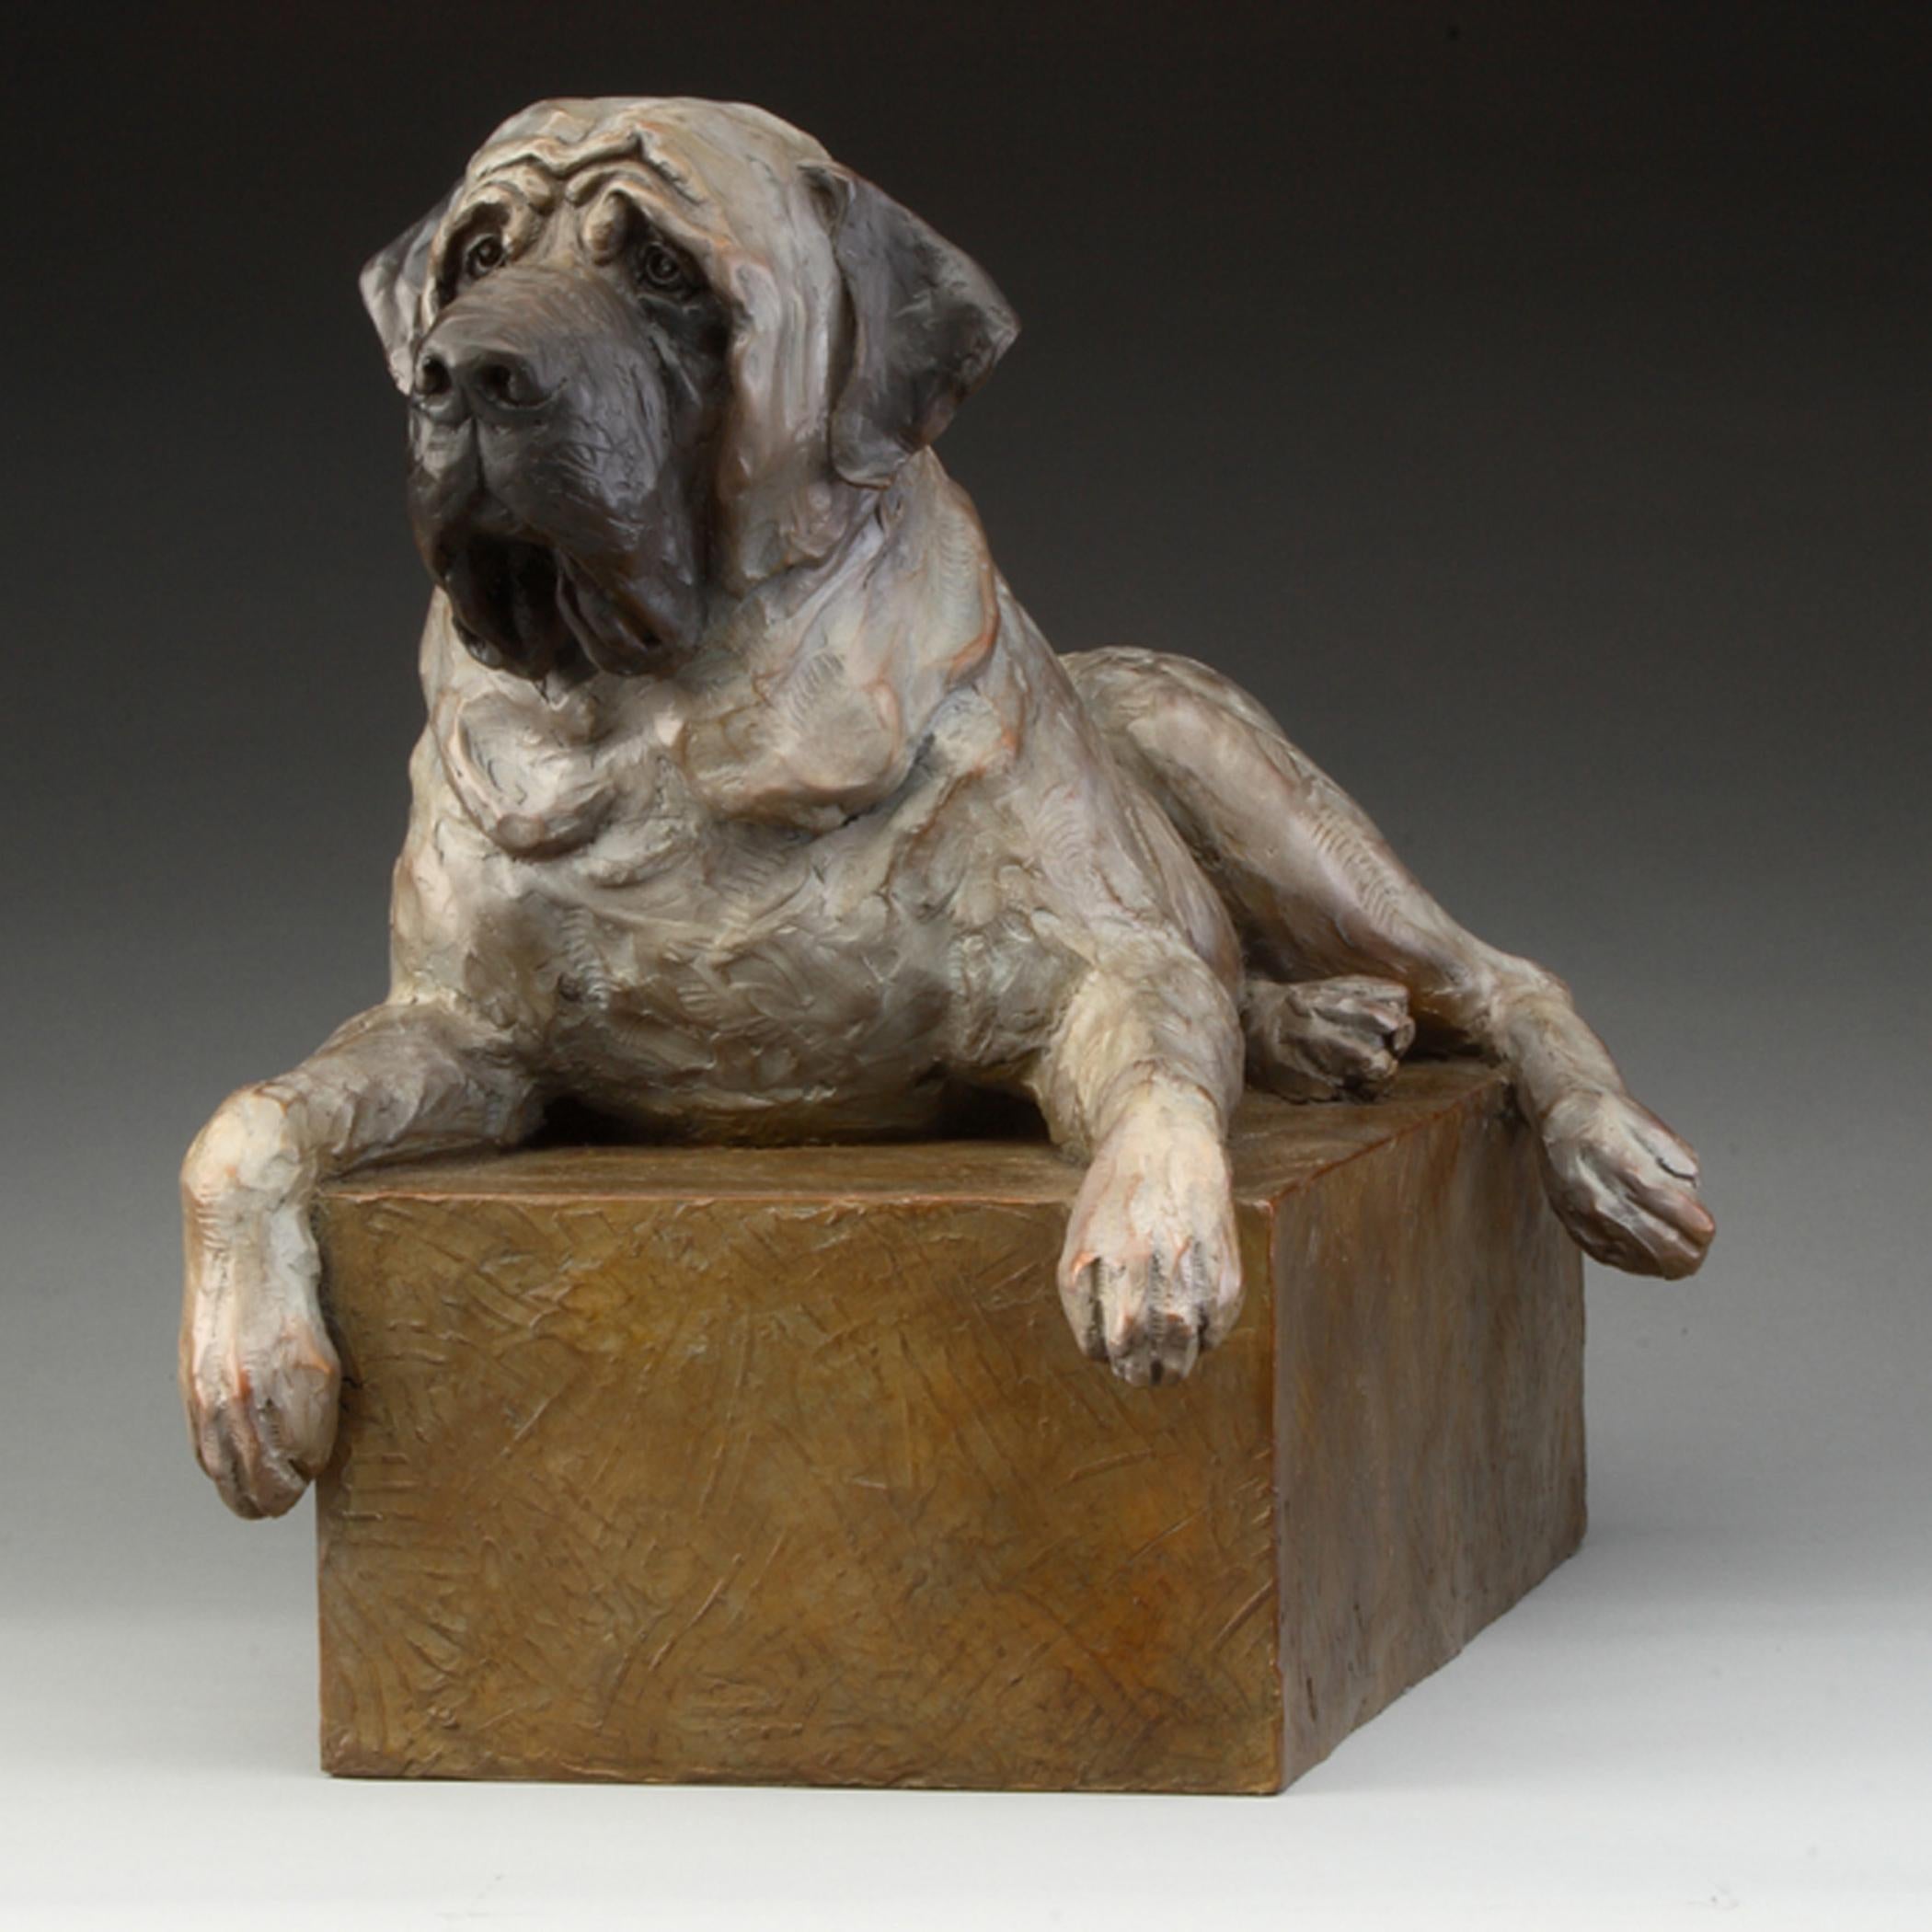 Dogge – Sculpture von Daniel Glanz